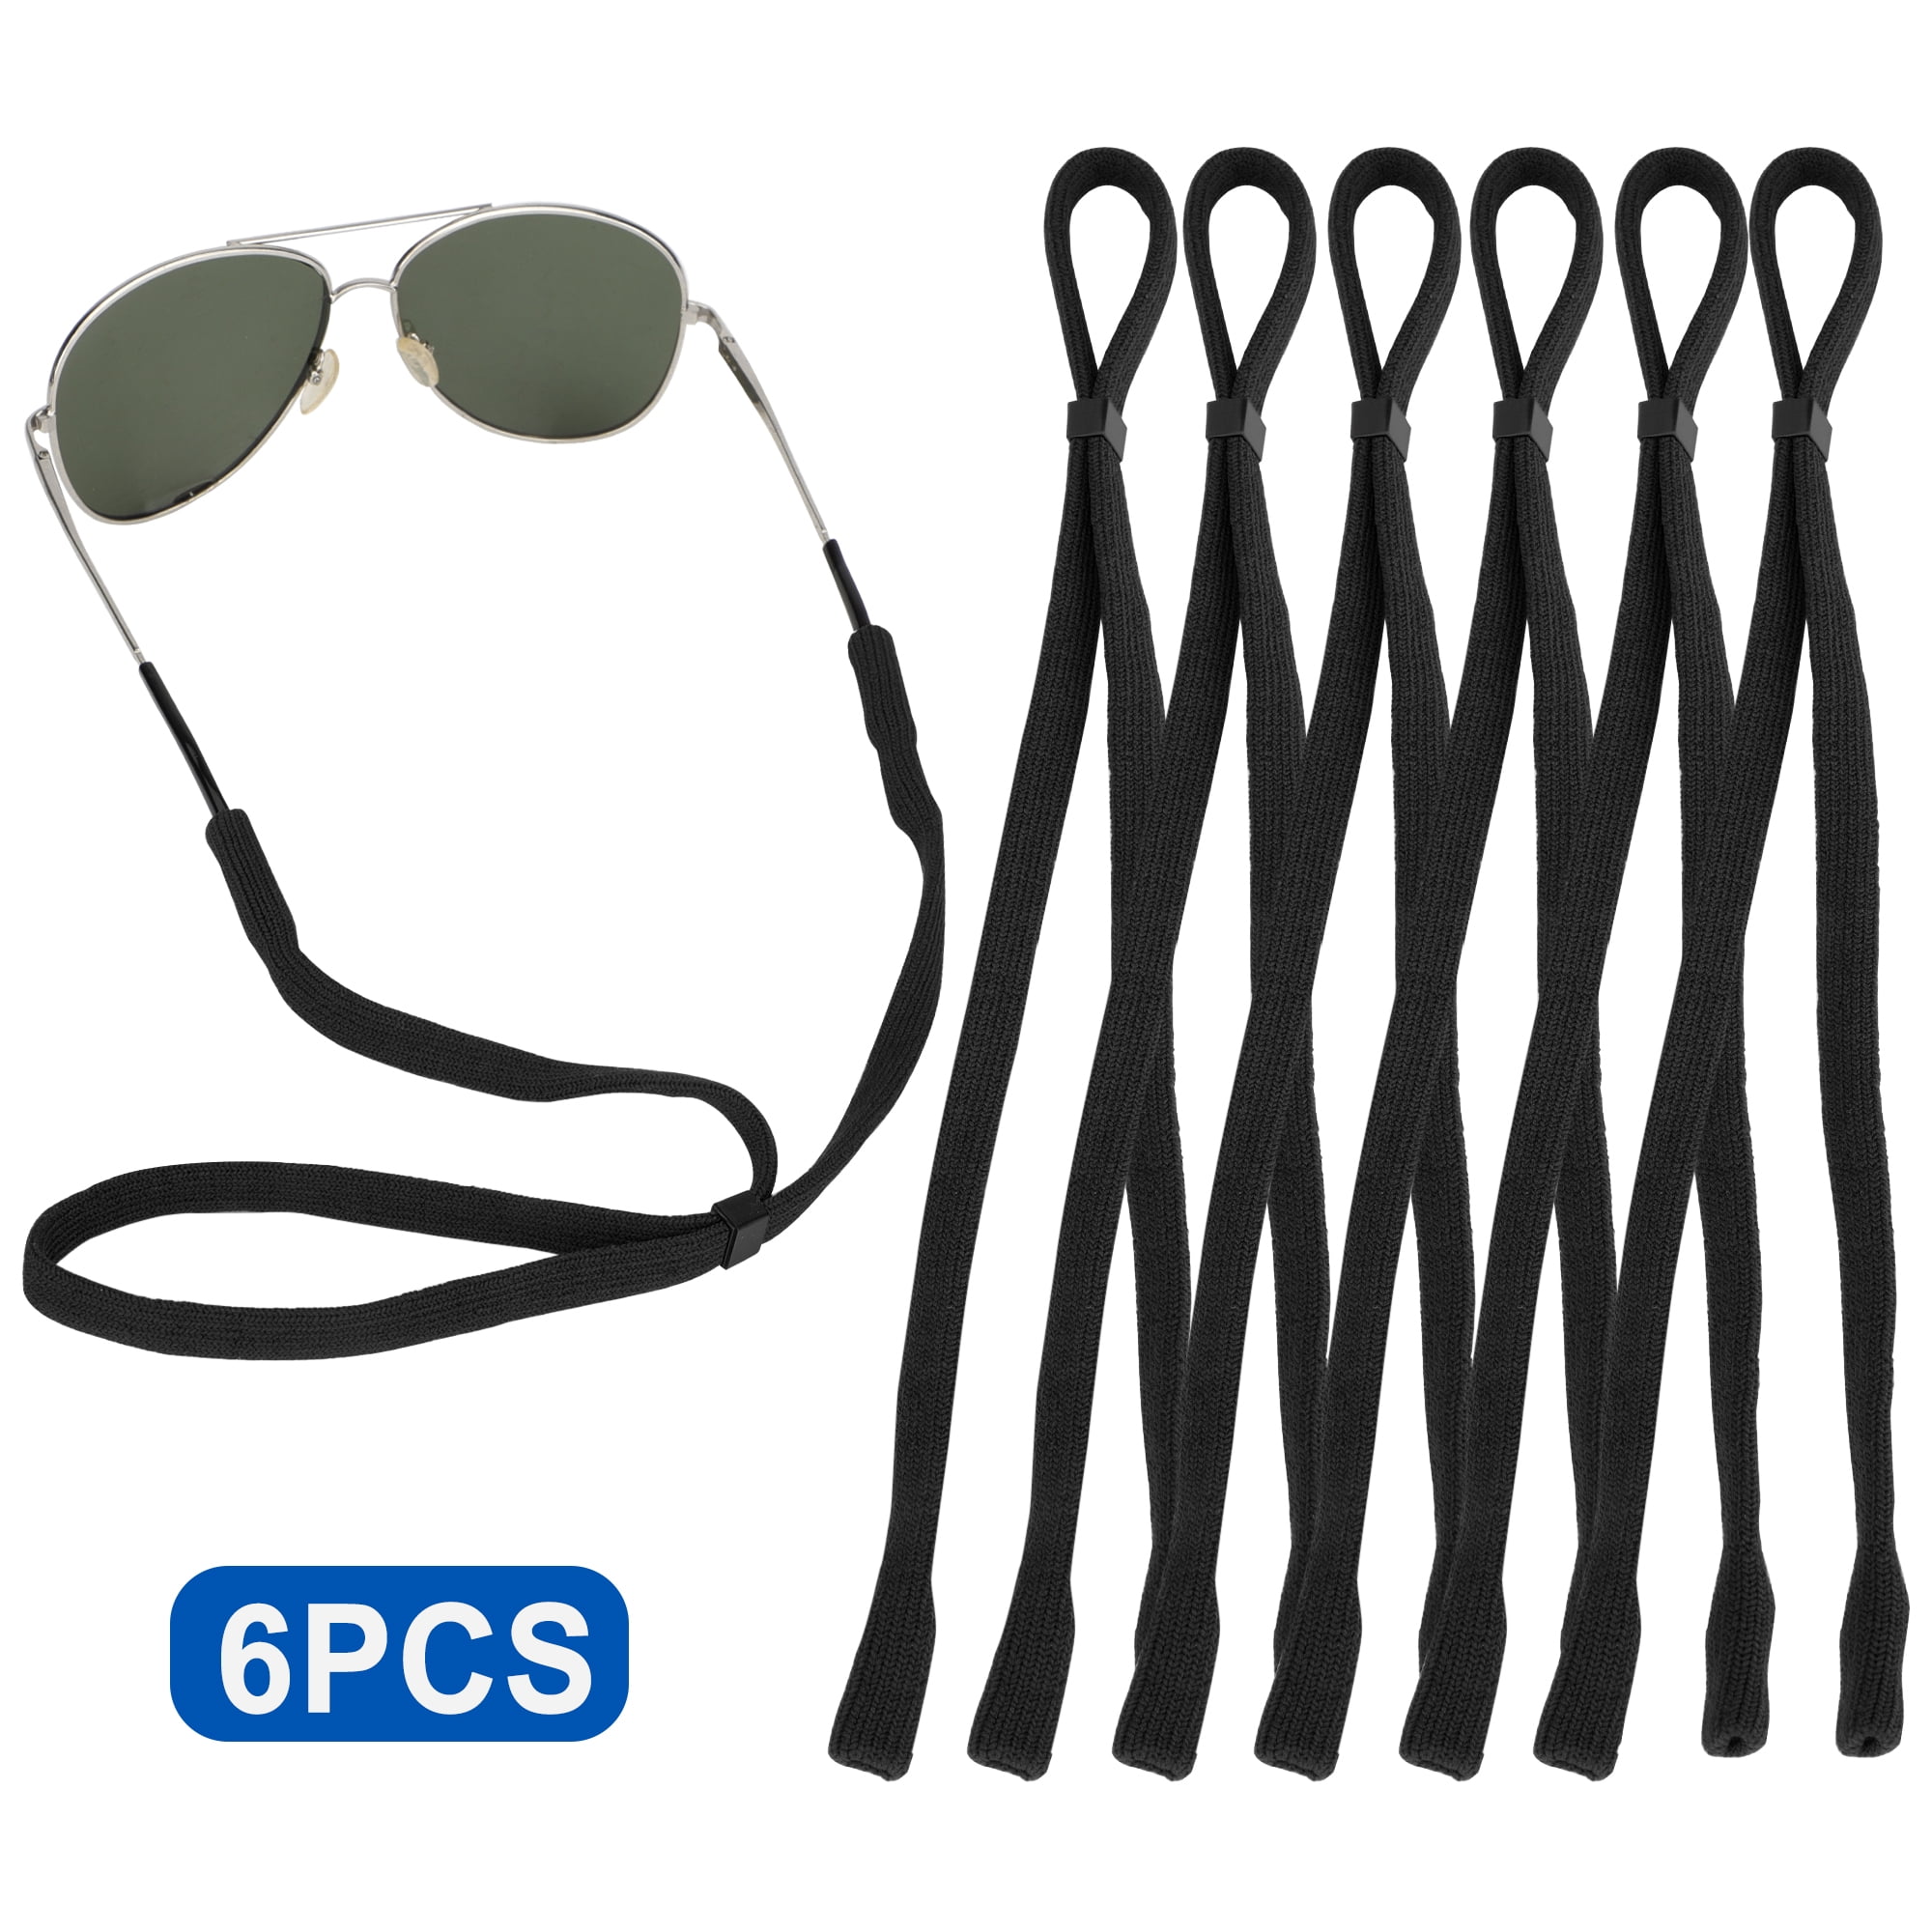 4 Pcs Eyeglass Chains for Women Eyeglasses String Holder Glasses Strap  Eyewear Chain Glasses Cord Lanyard Gift